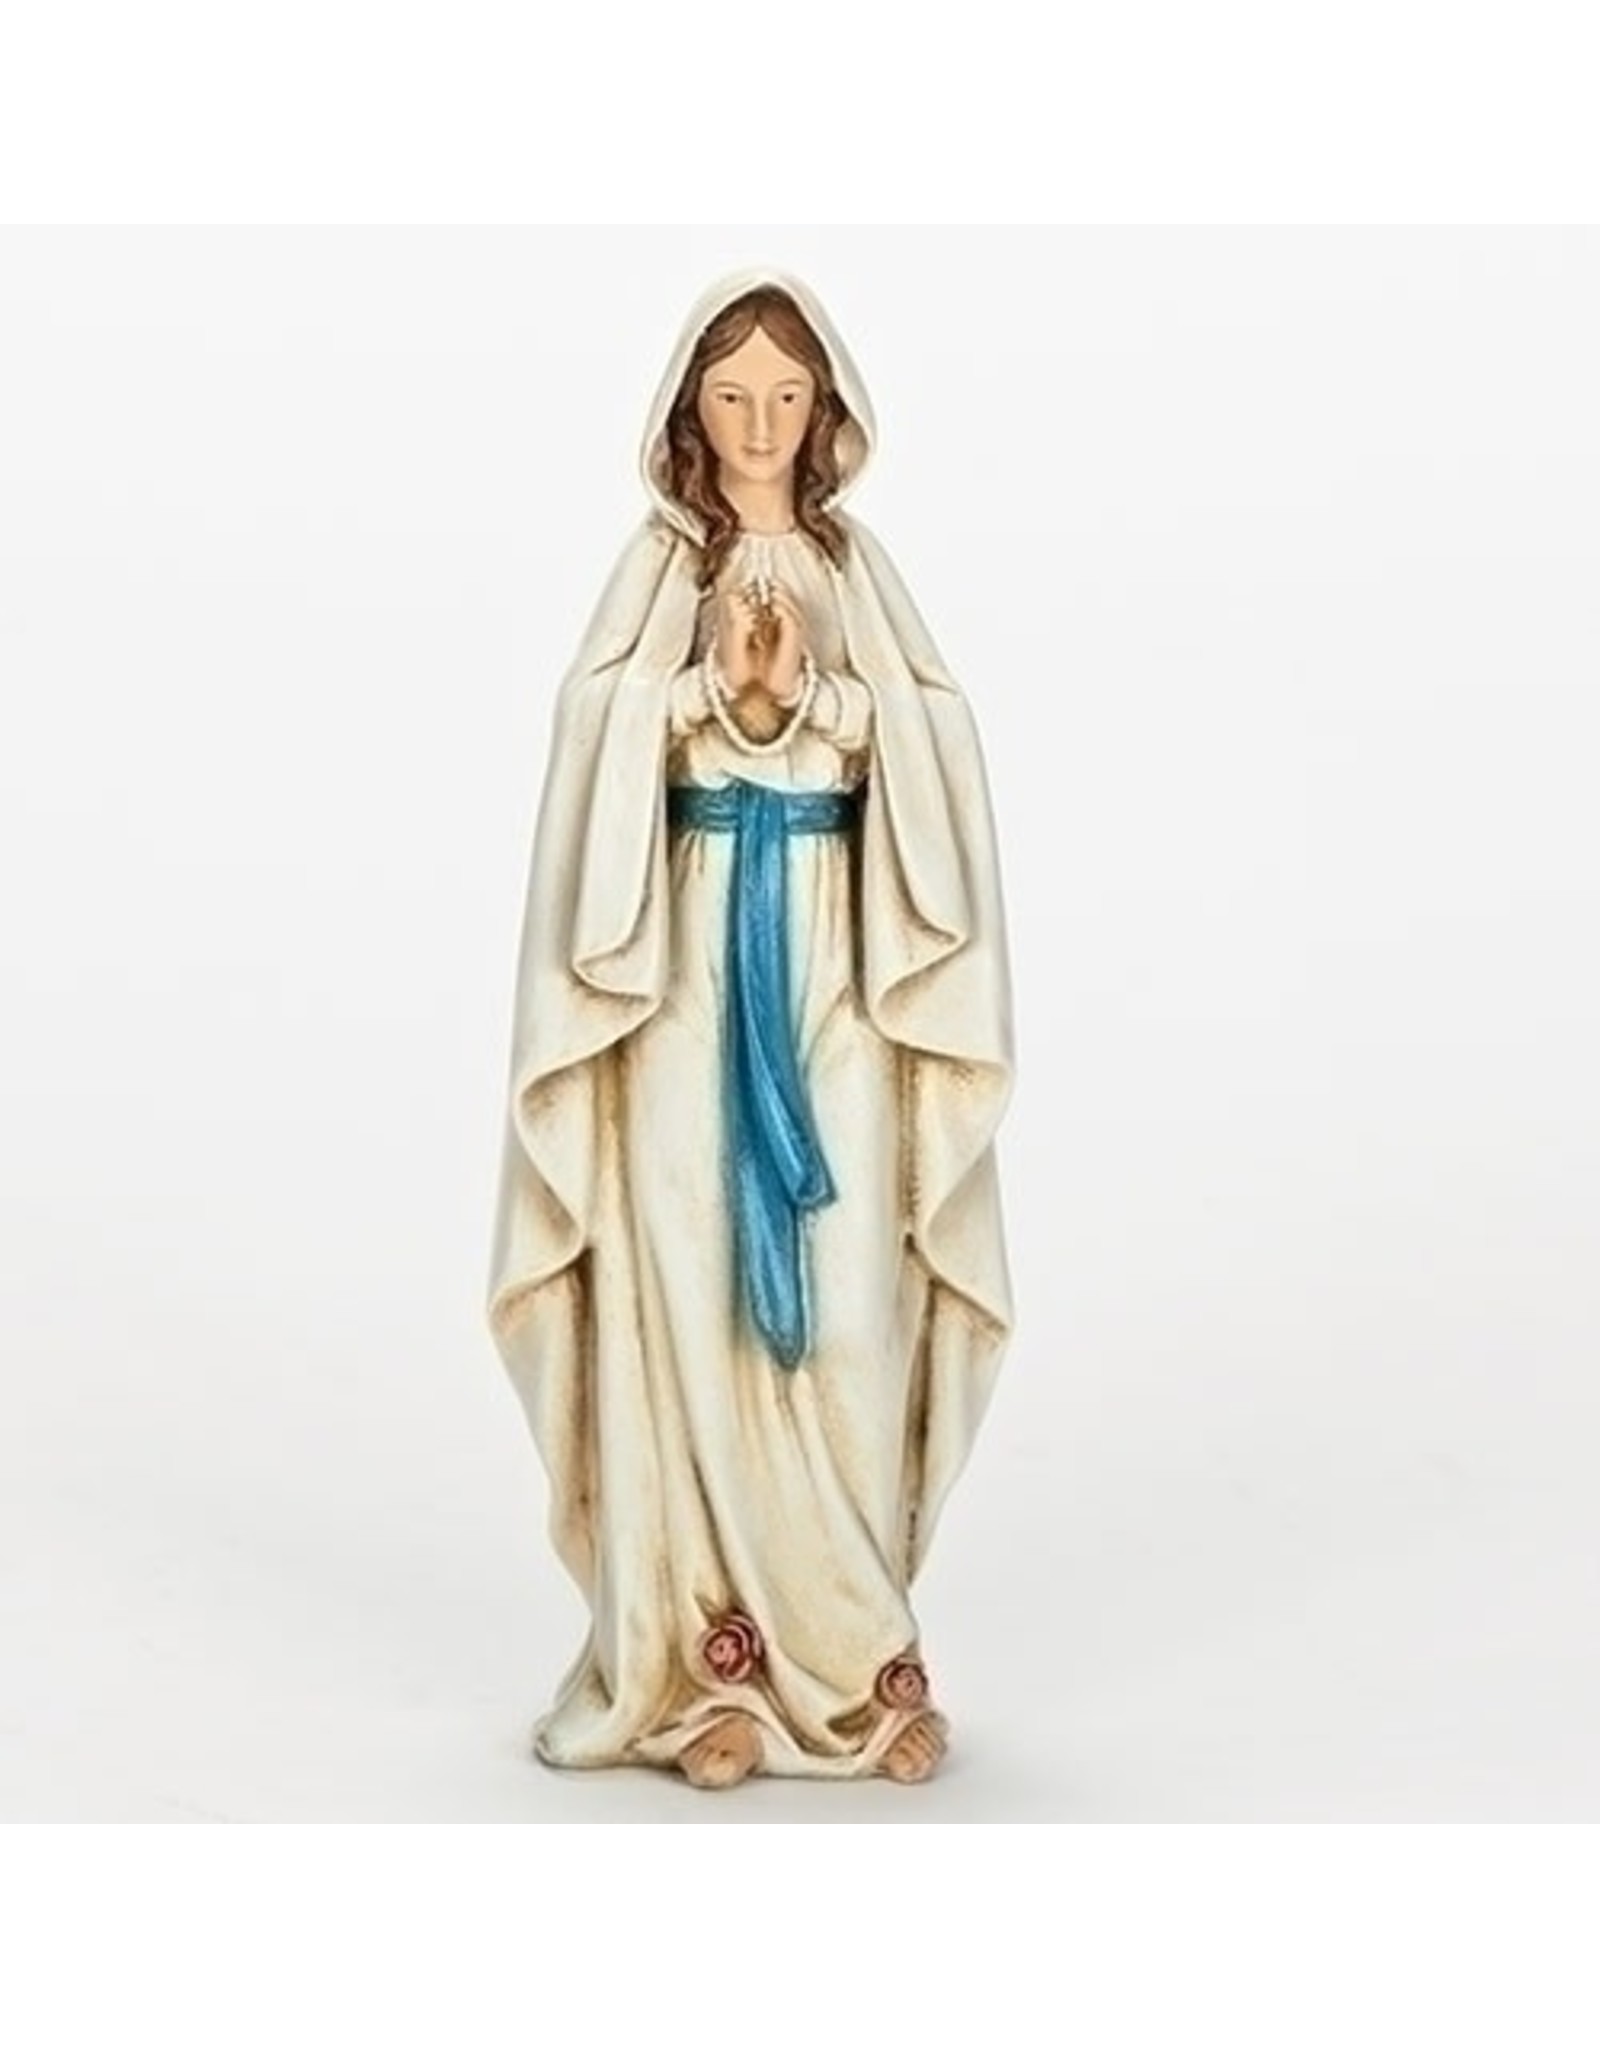 Roman Our Lady of Lourdes Statue (Renaissance Collection), 6.25"